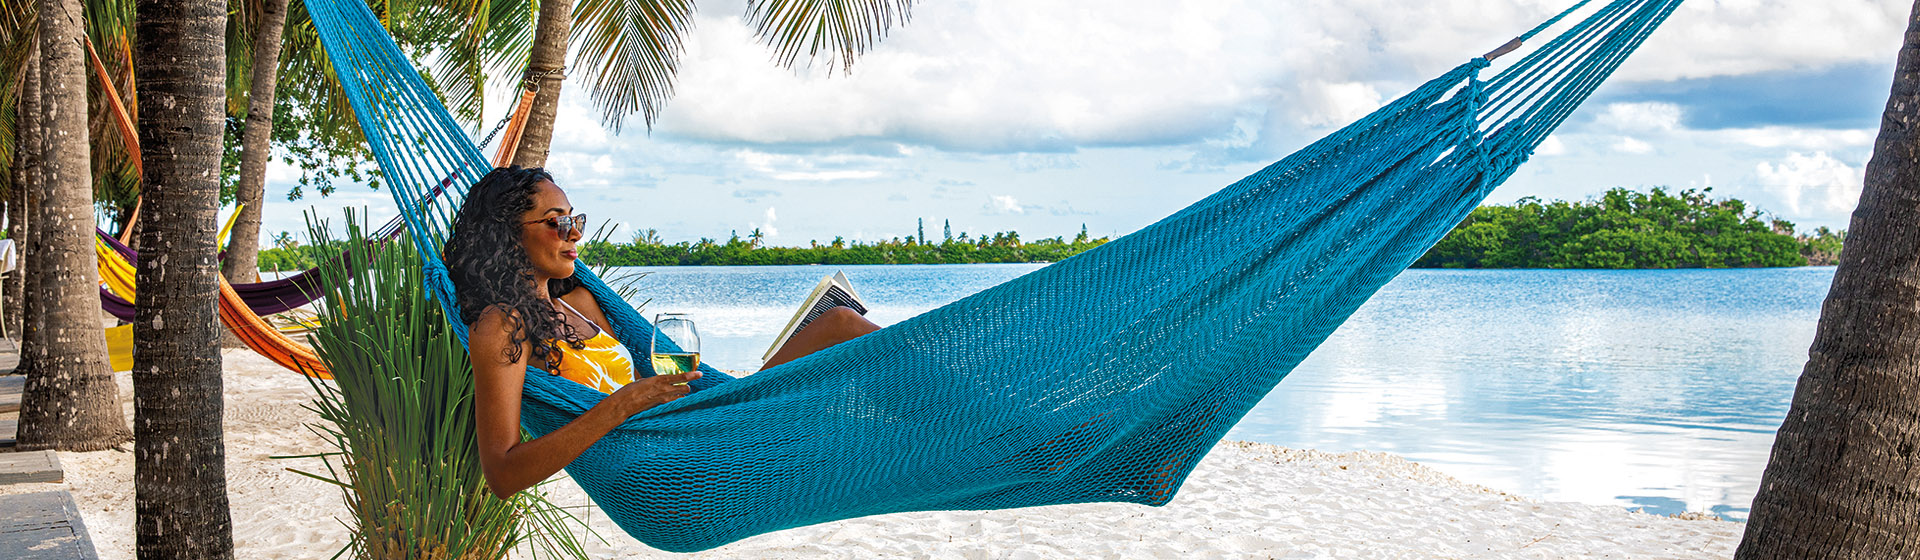 Relax i hängmatta, Florida Keys.